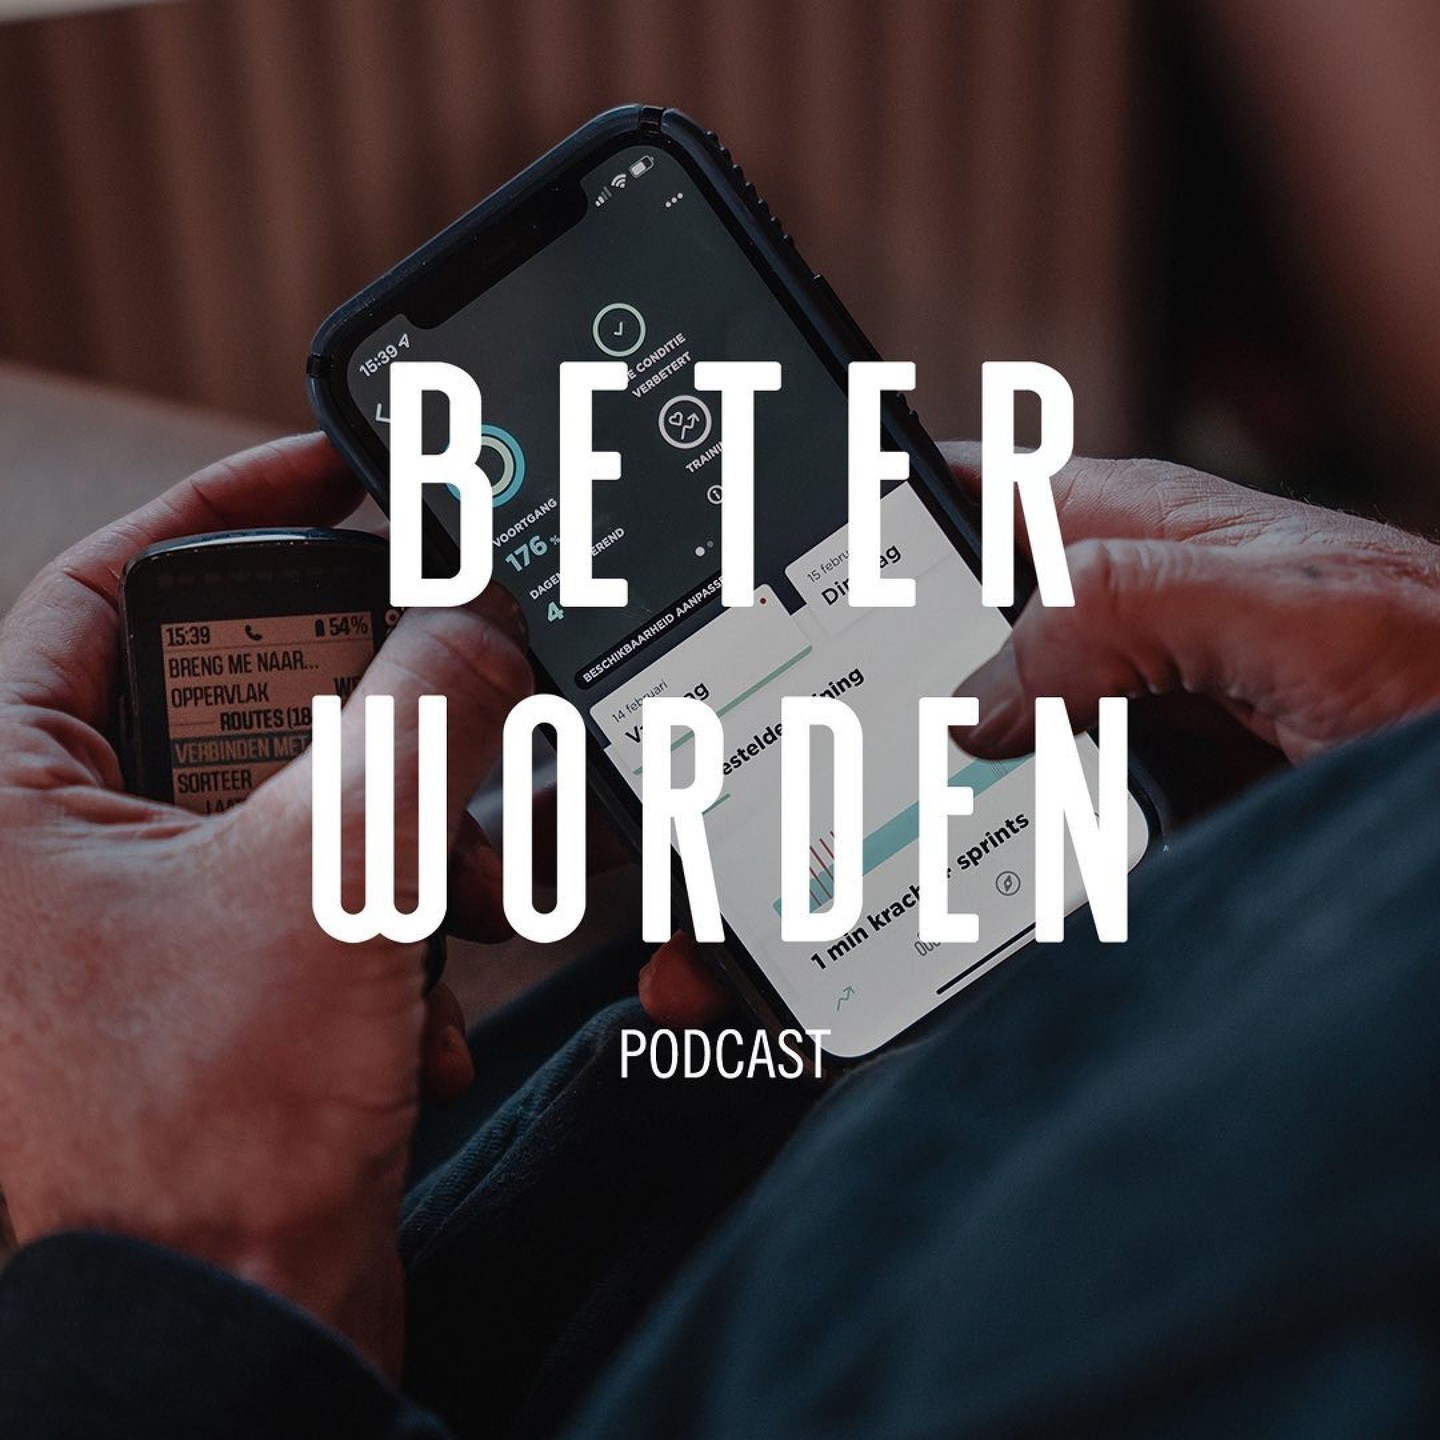 Beter Worden Podcast